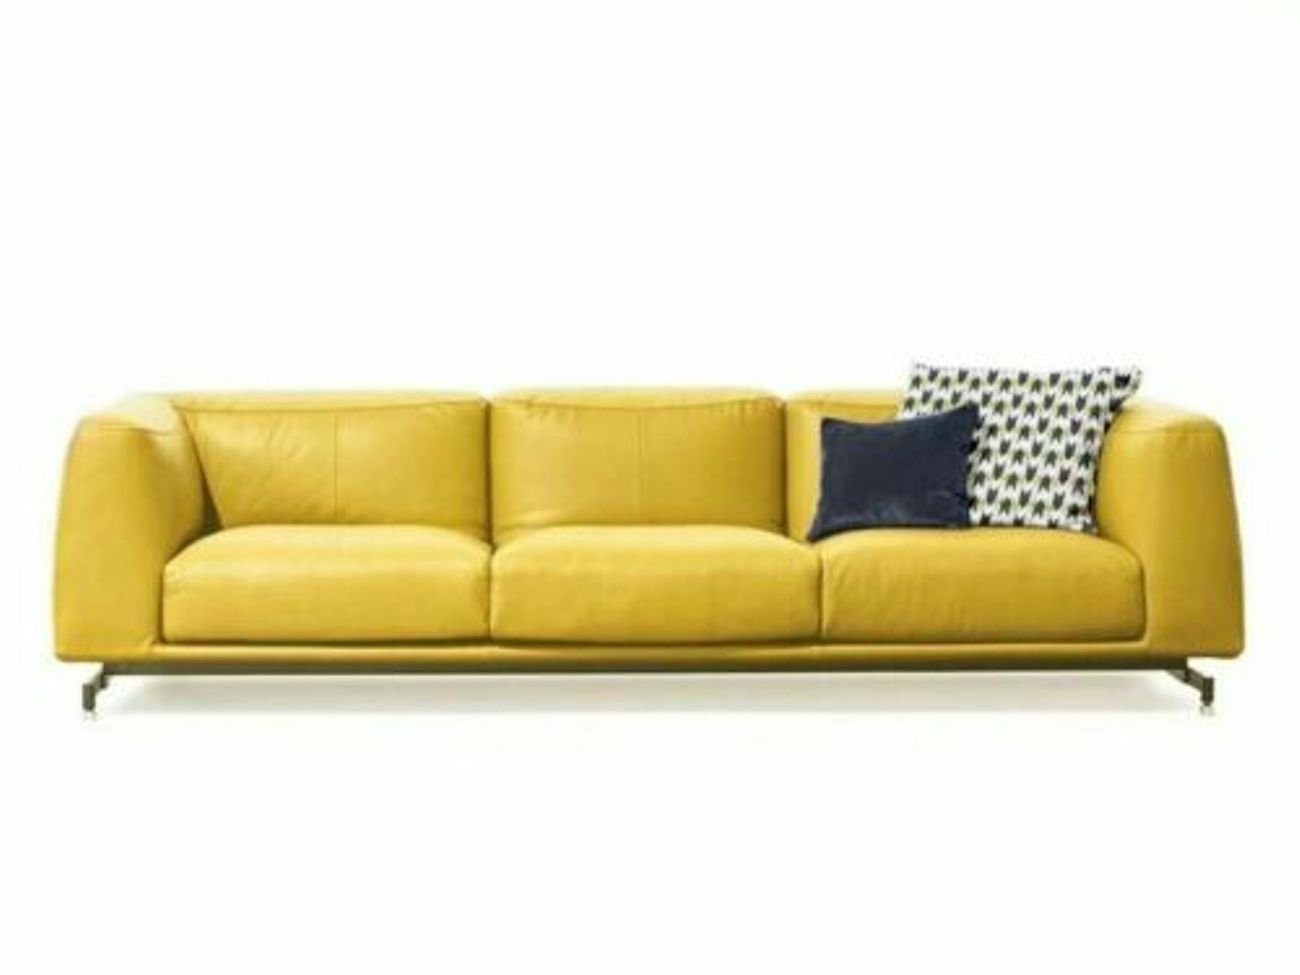 JVmoebel 4-Sitzer, Design XXL Big Sofa Couch Leder Couchen Gelbe 4 Sitzer Polster 255 cm